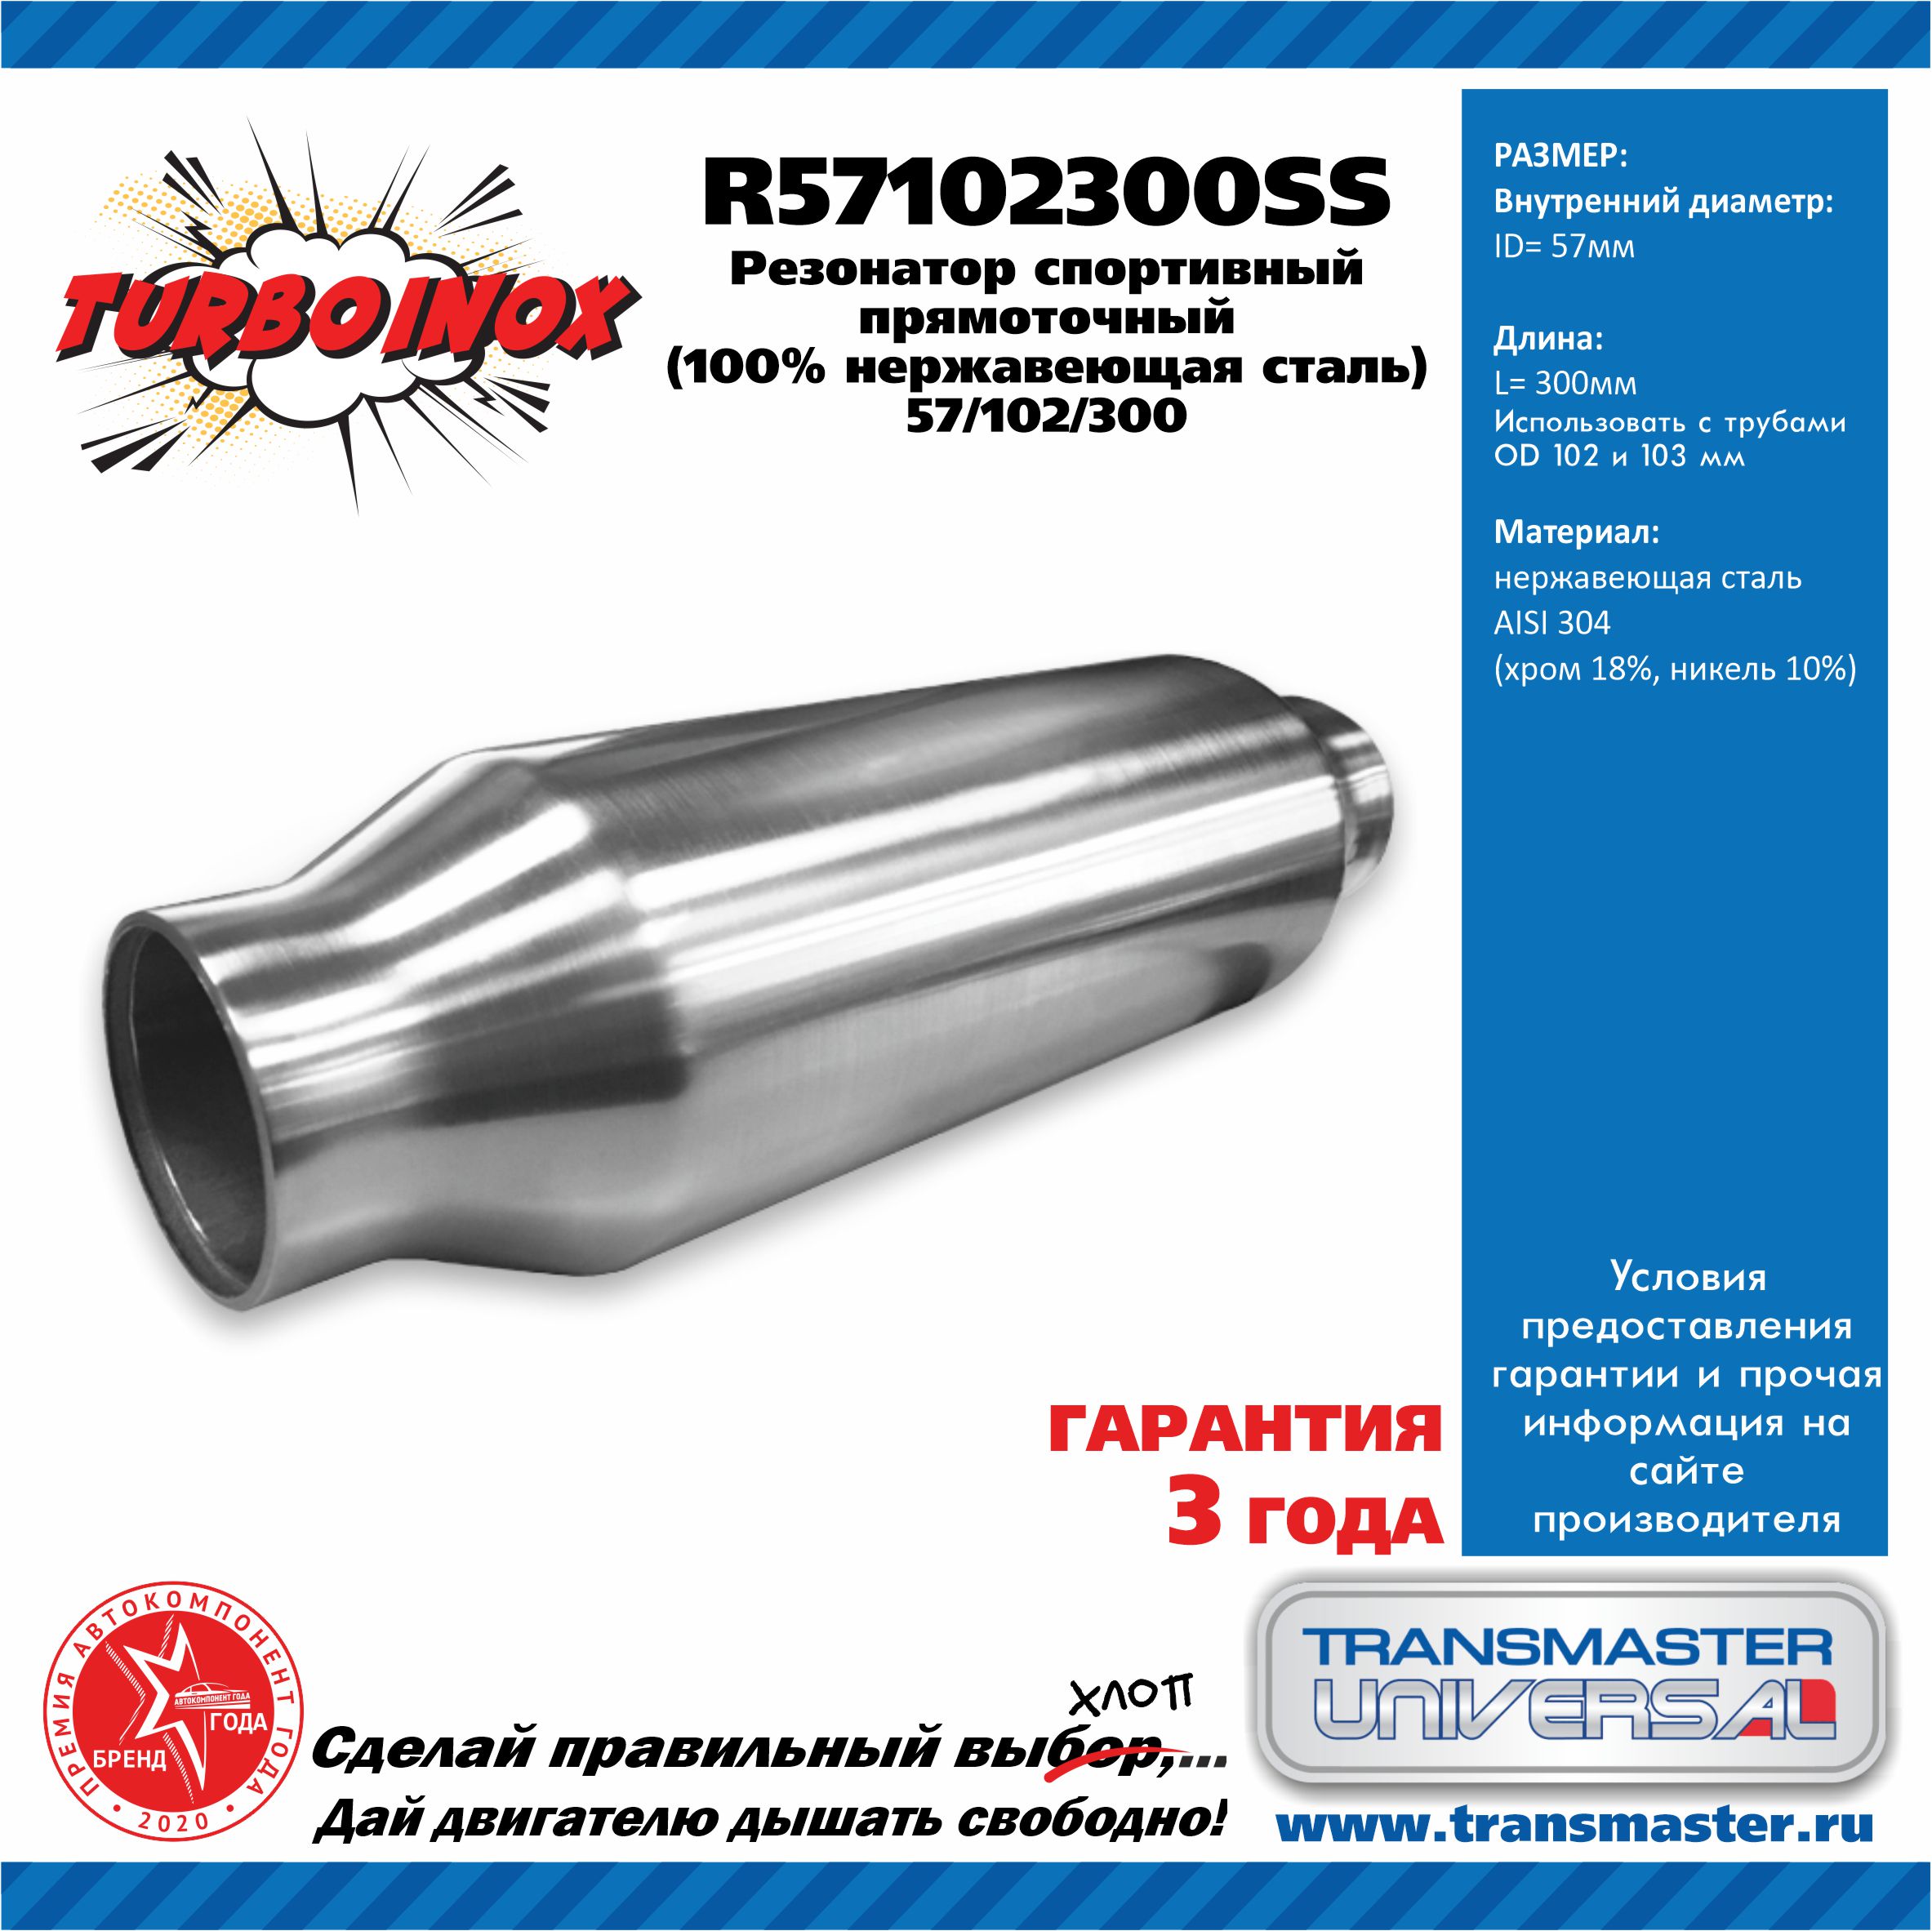 Резонатор спортивный прямоточный серия turboinox (100% нержавеющая сталь) - TRANSMASTER UNIVERSAL R57102300SS